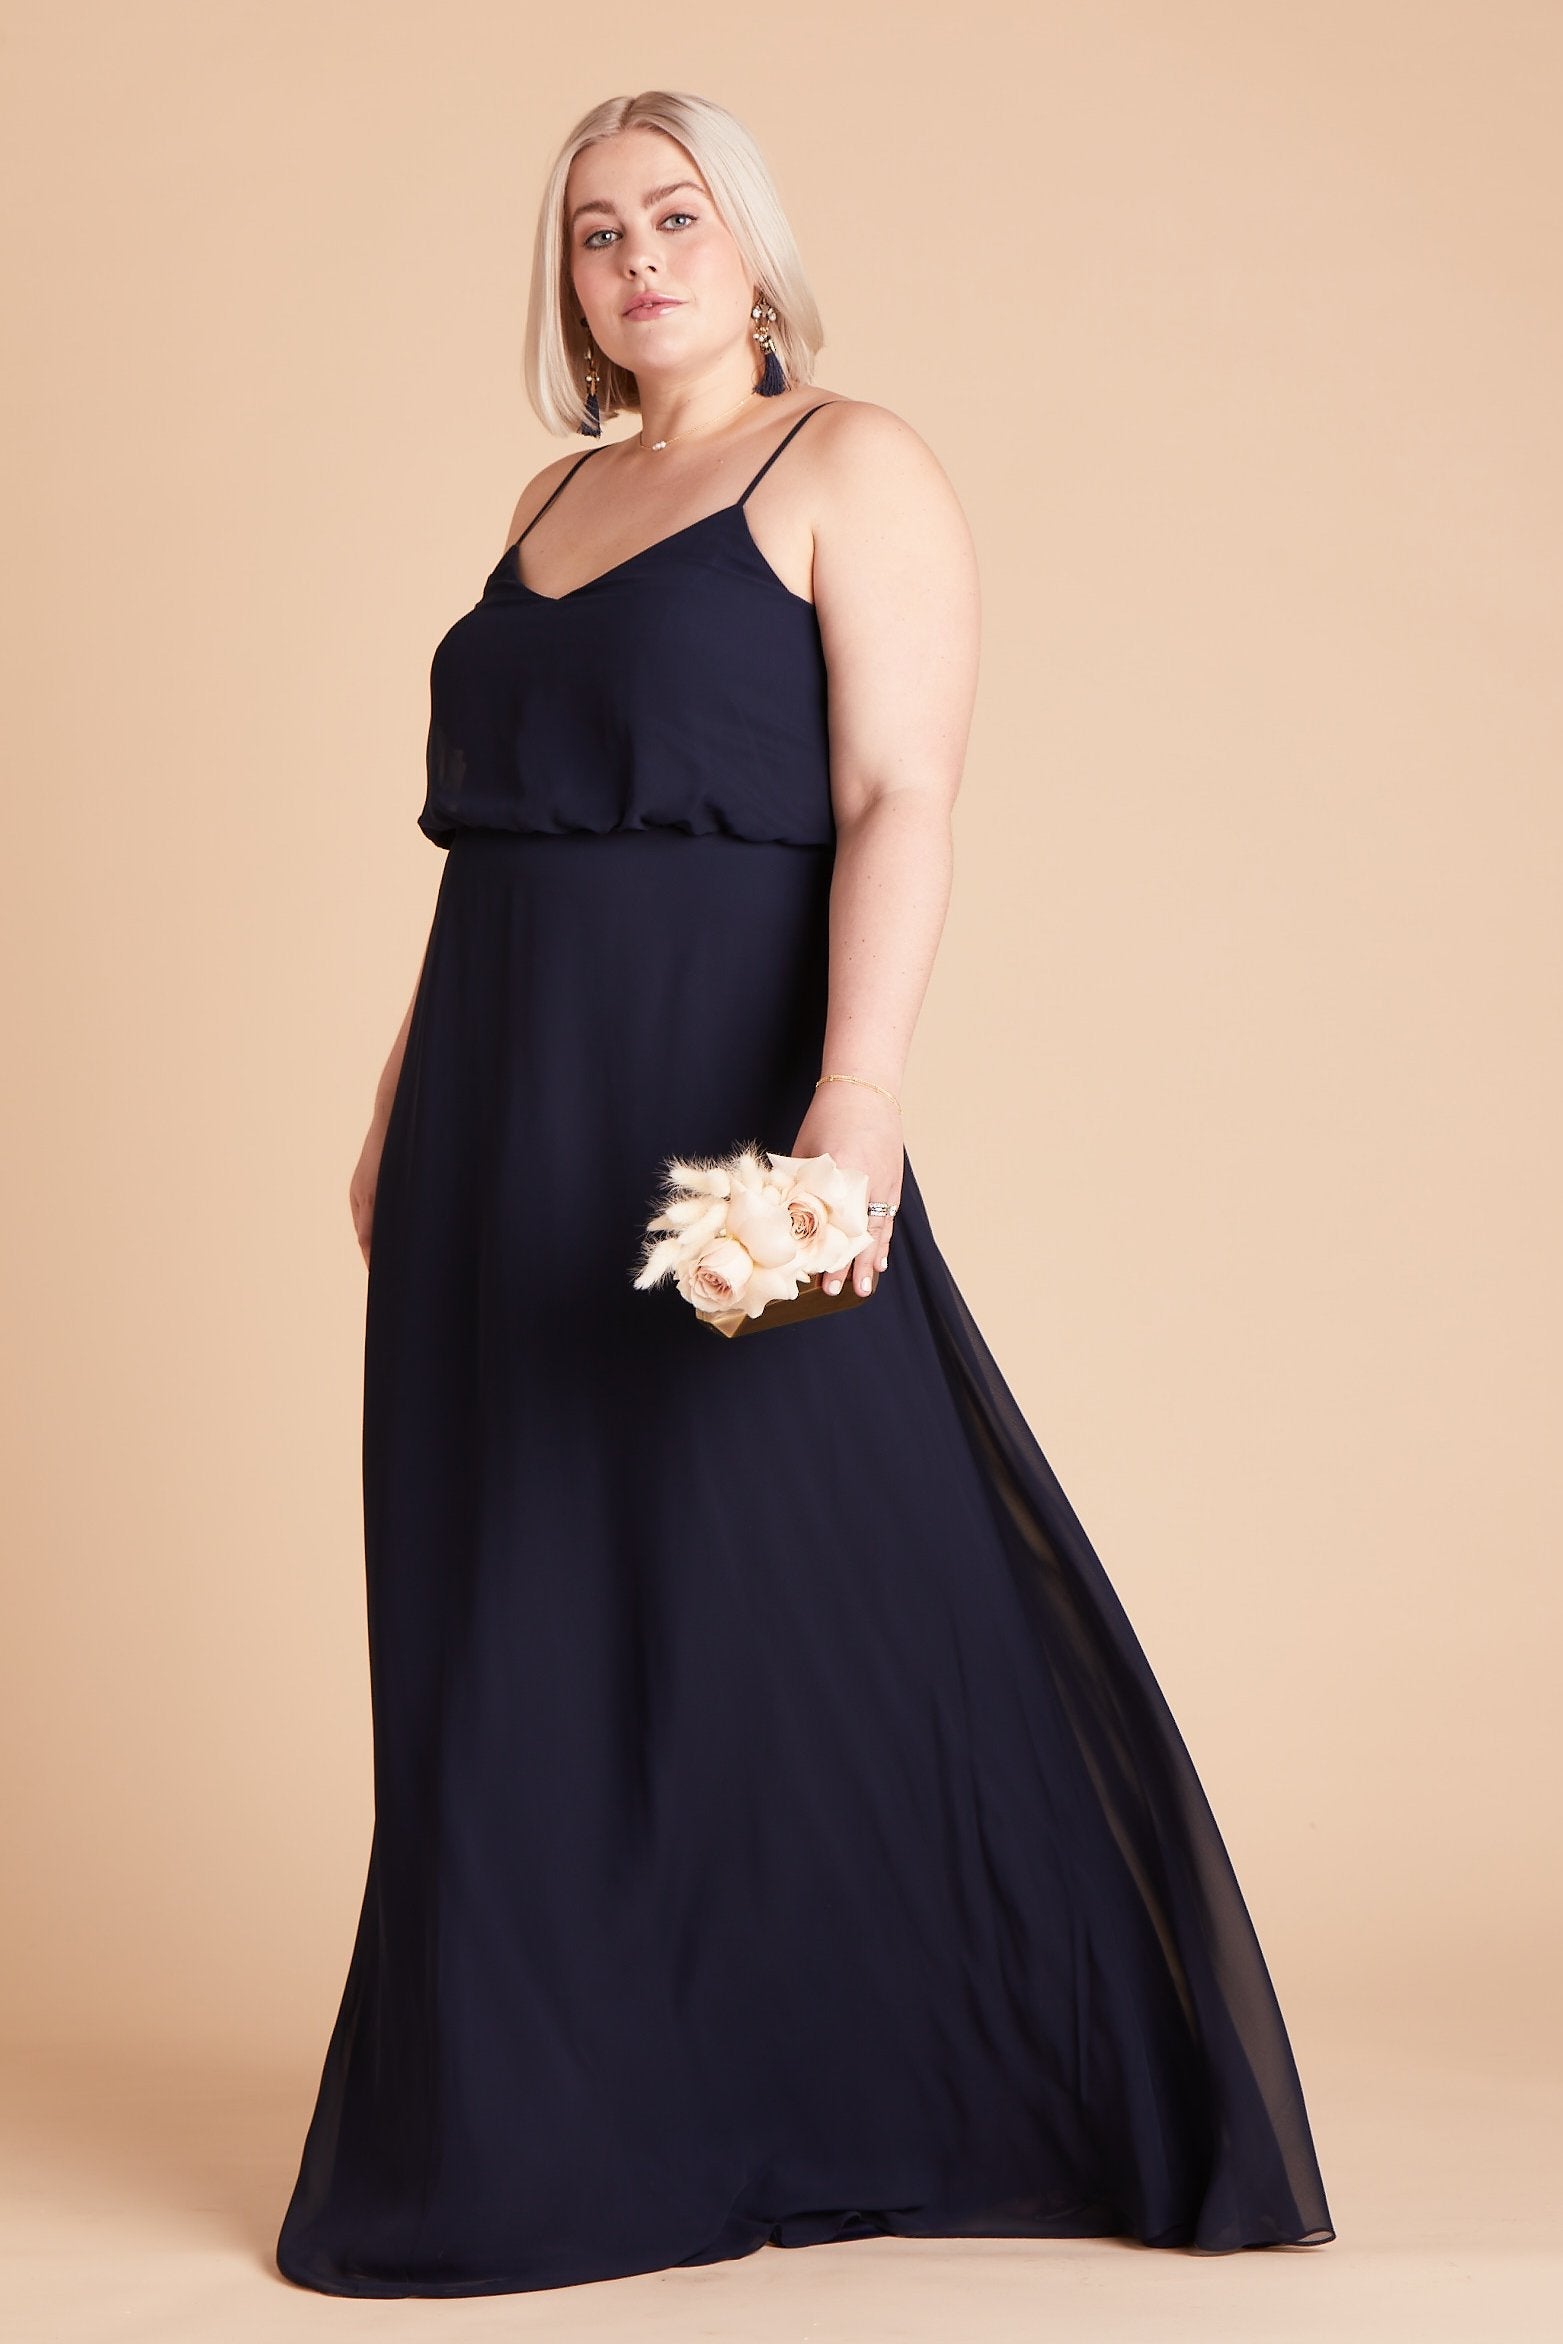 Gwennie plus size bridesmaid dress in navy blue chiffon by Birdy Grey, side view